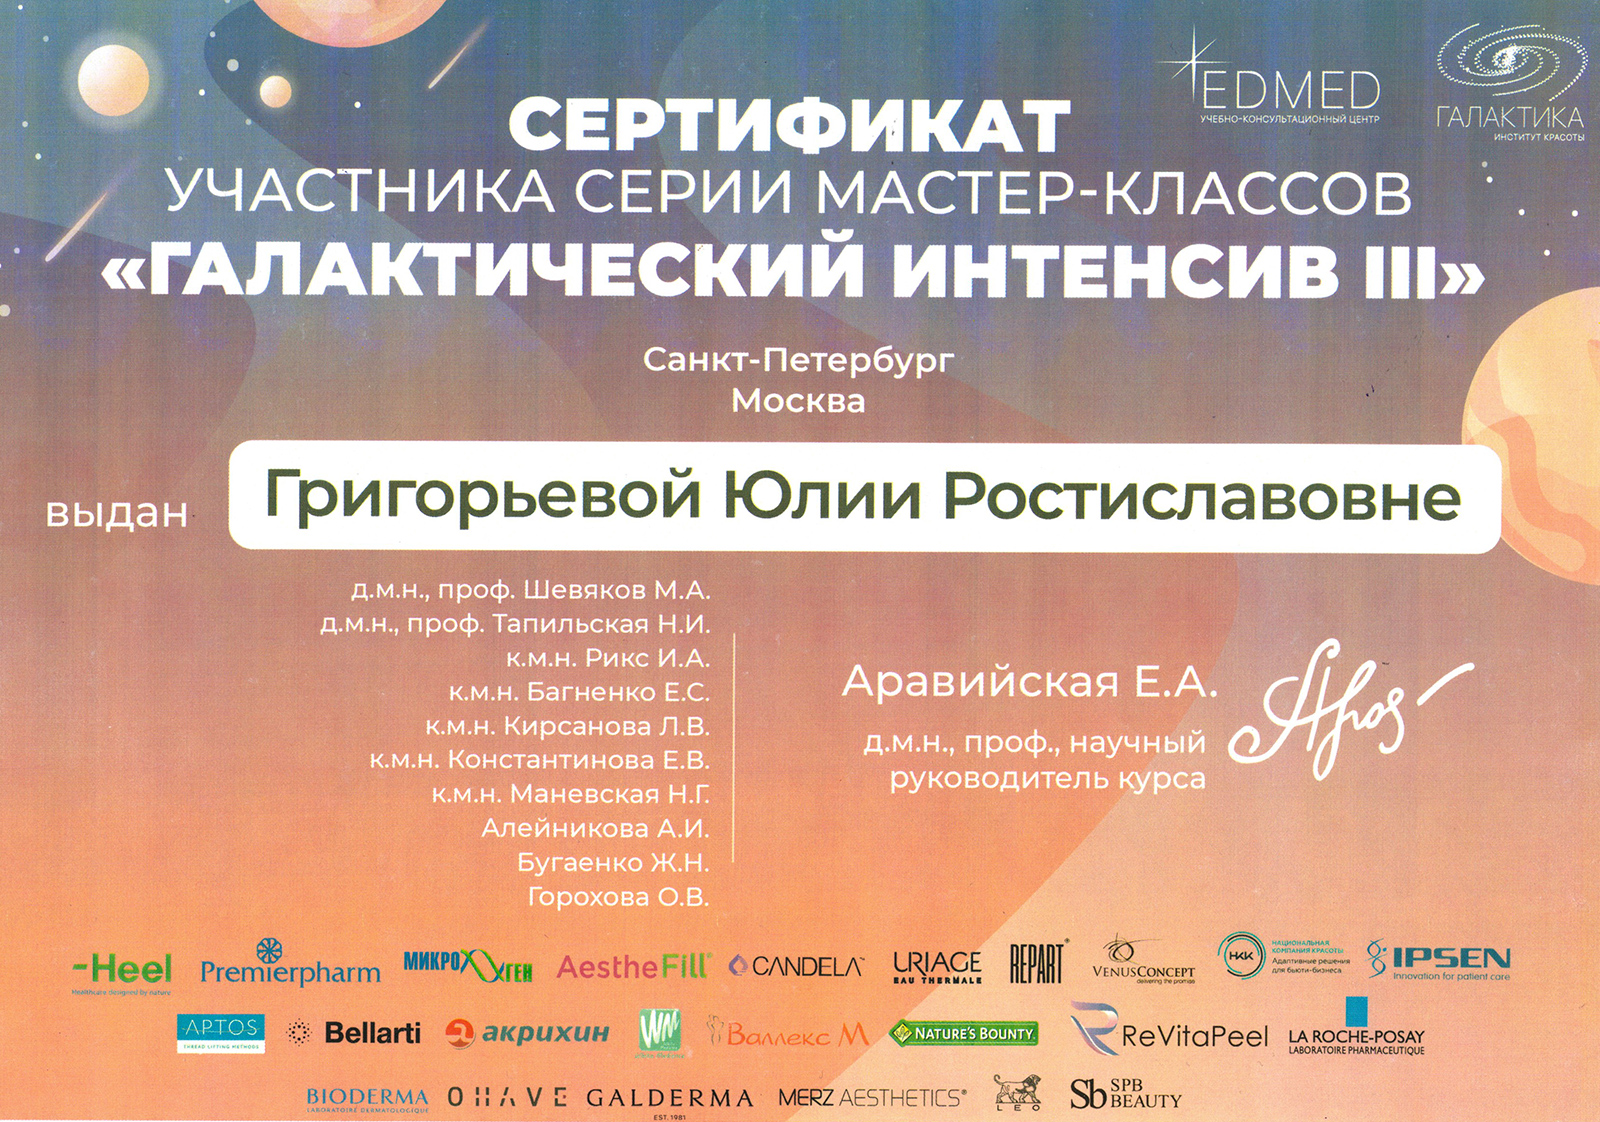 Сертификат — Мастер-класс «Галактический интентсив III». Григорьева Юлия Ростиславовна